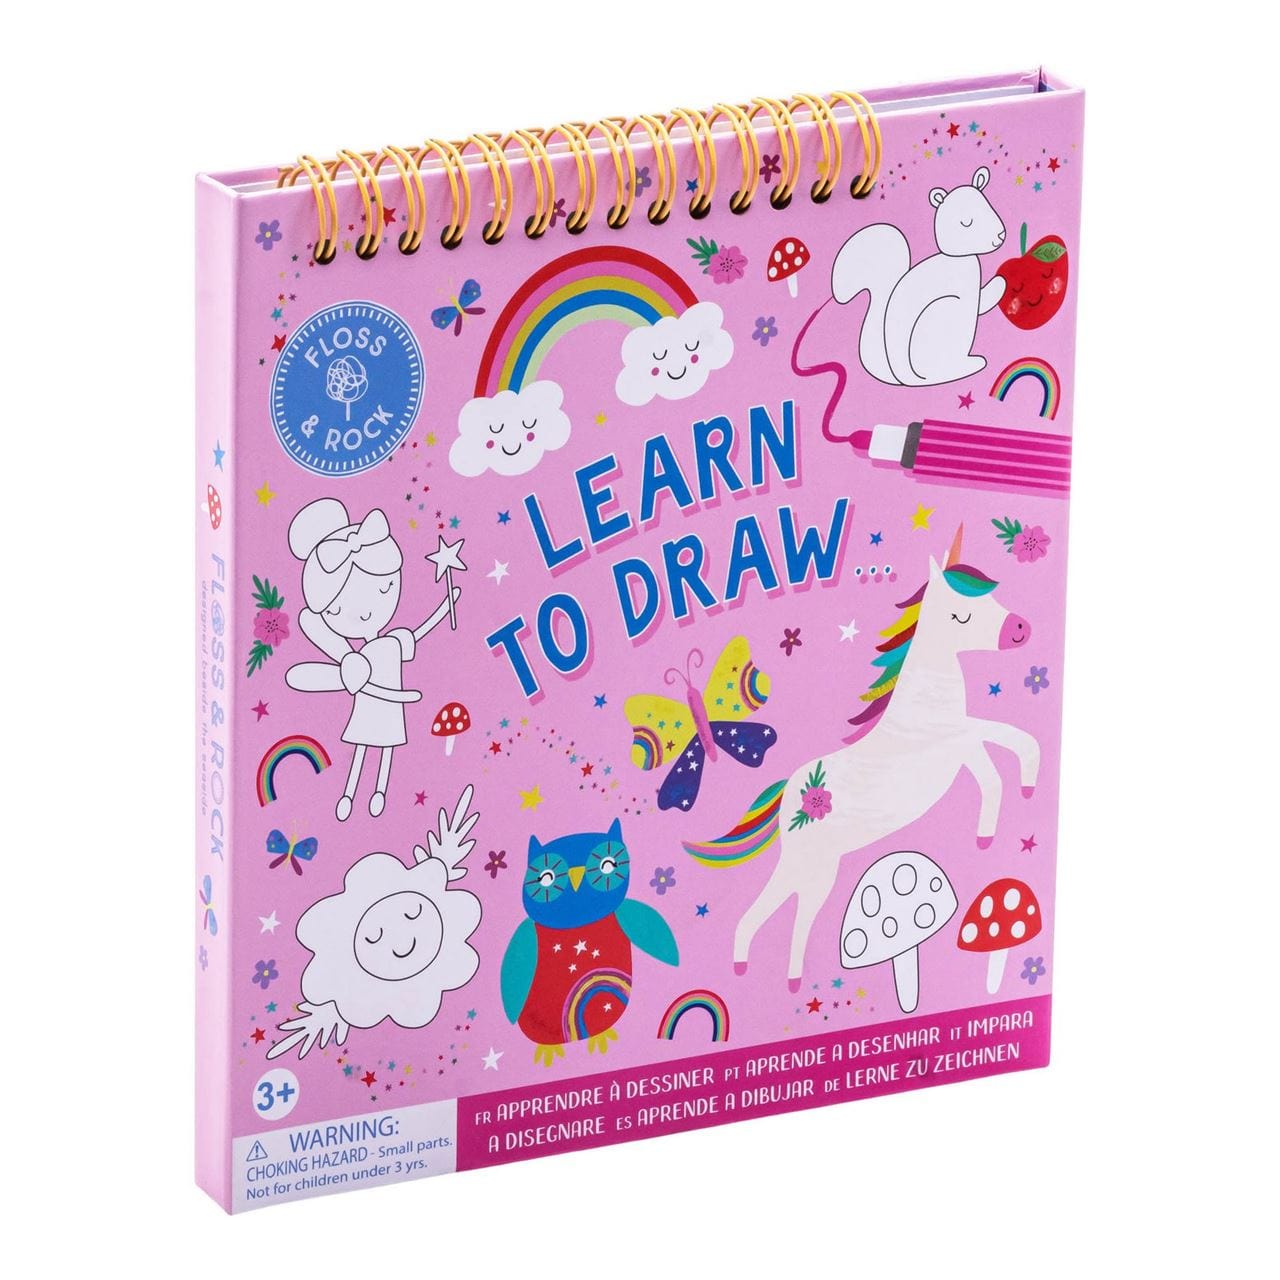 Floss & Rock Toys Rainbow Fairy - Learn To Draw